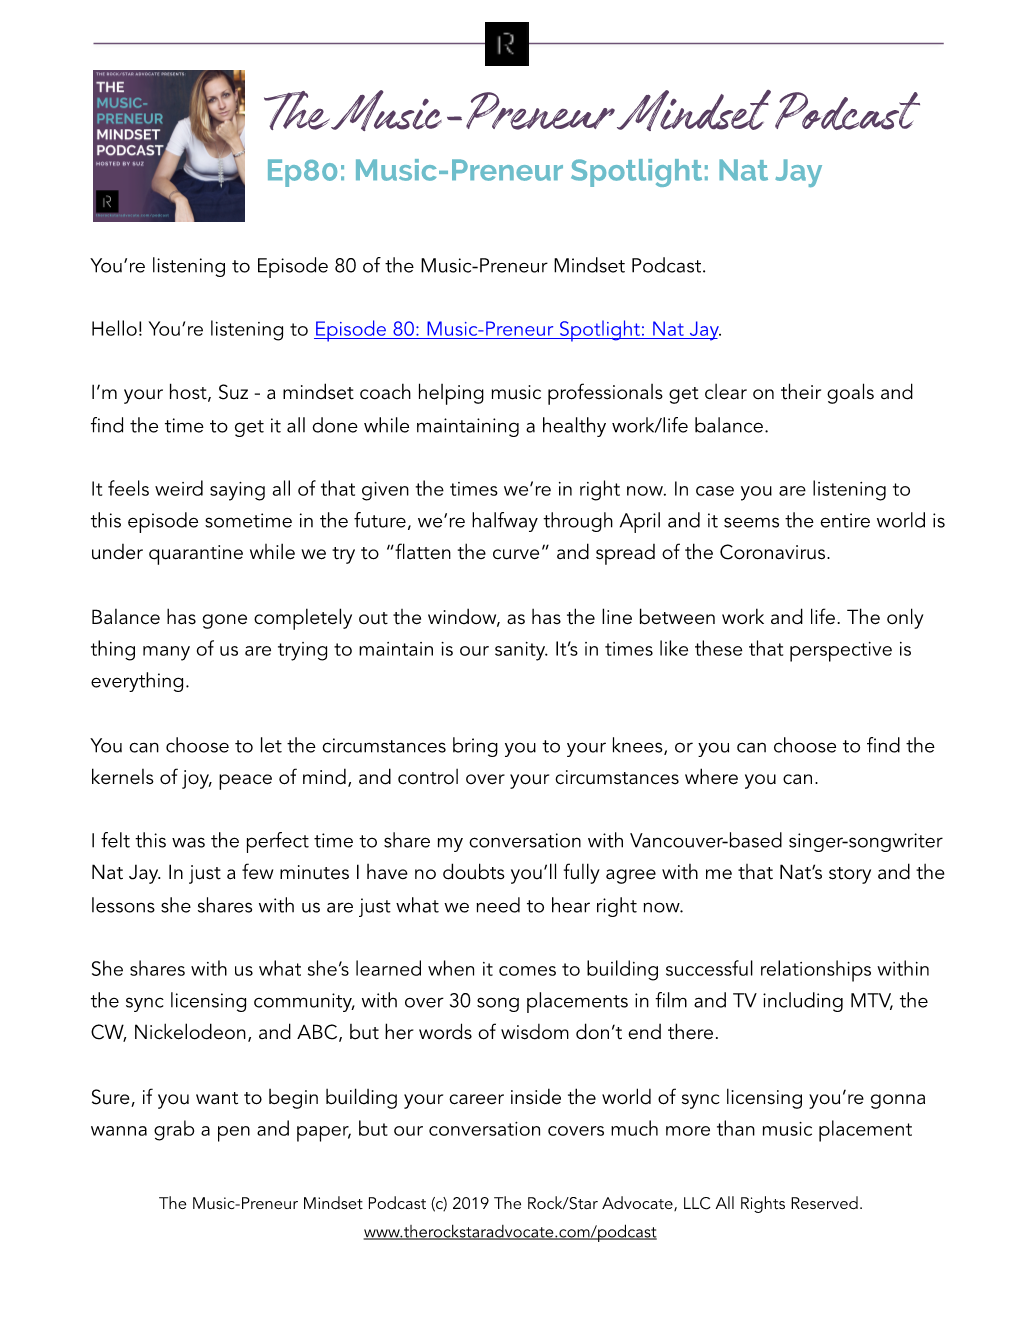 The Music-Preneur Mindset Podcast Ep80: Music-Preneur Spotlight: Nat Jay